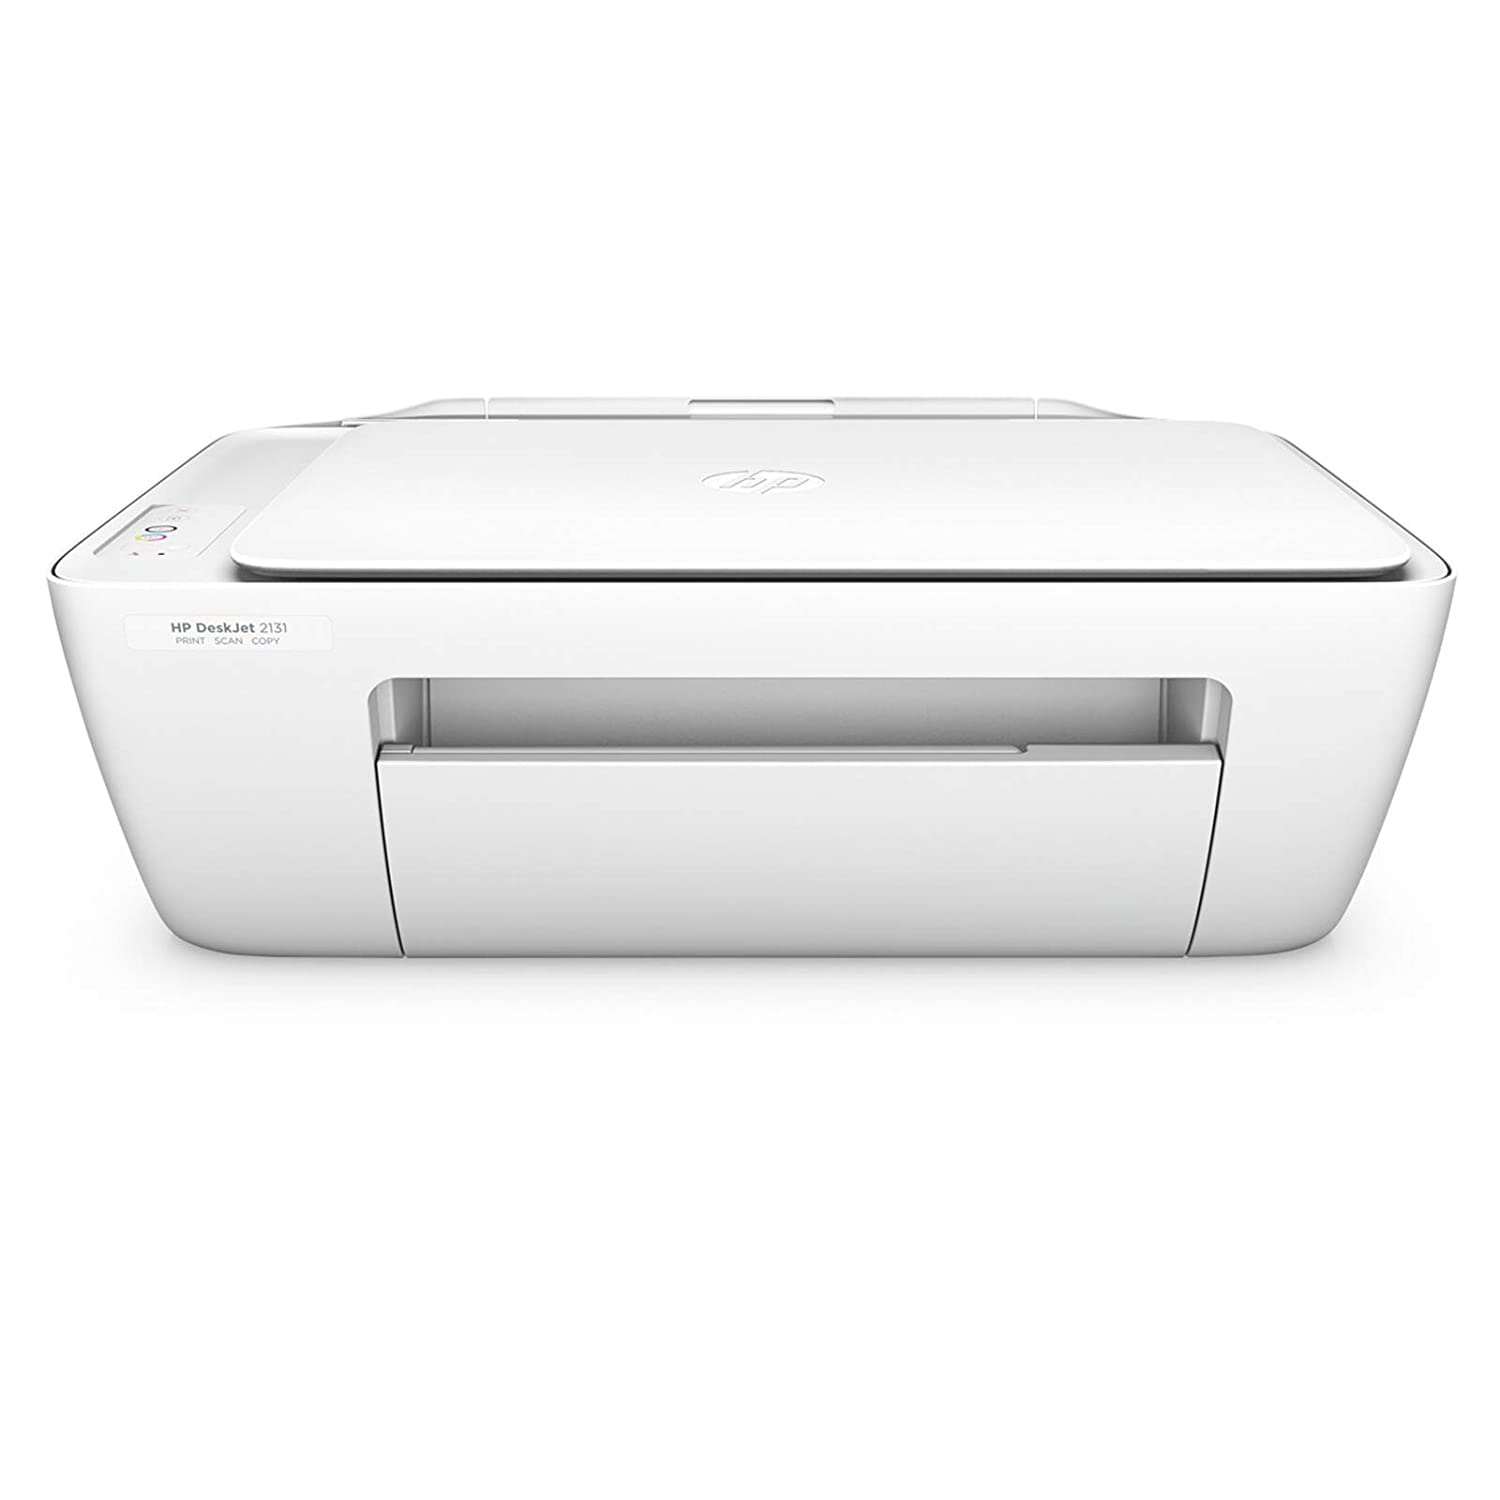 HP DeskJet 2132 All-in-One Inkjet Colour Printer